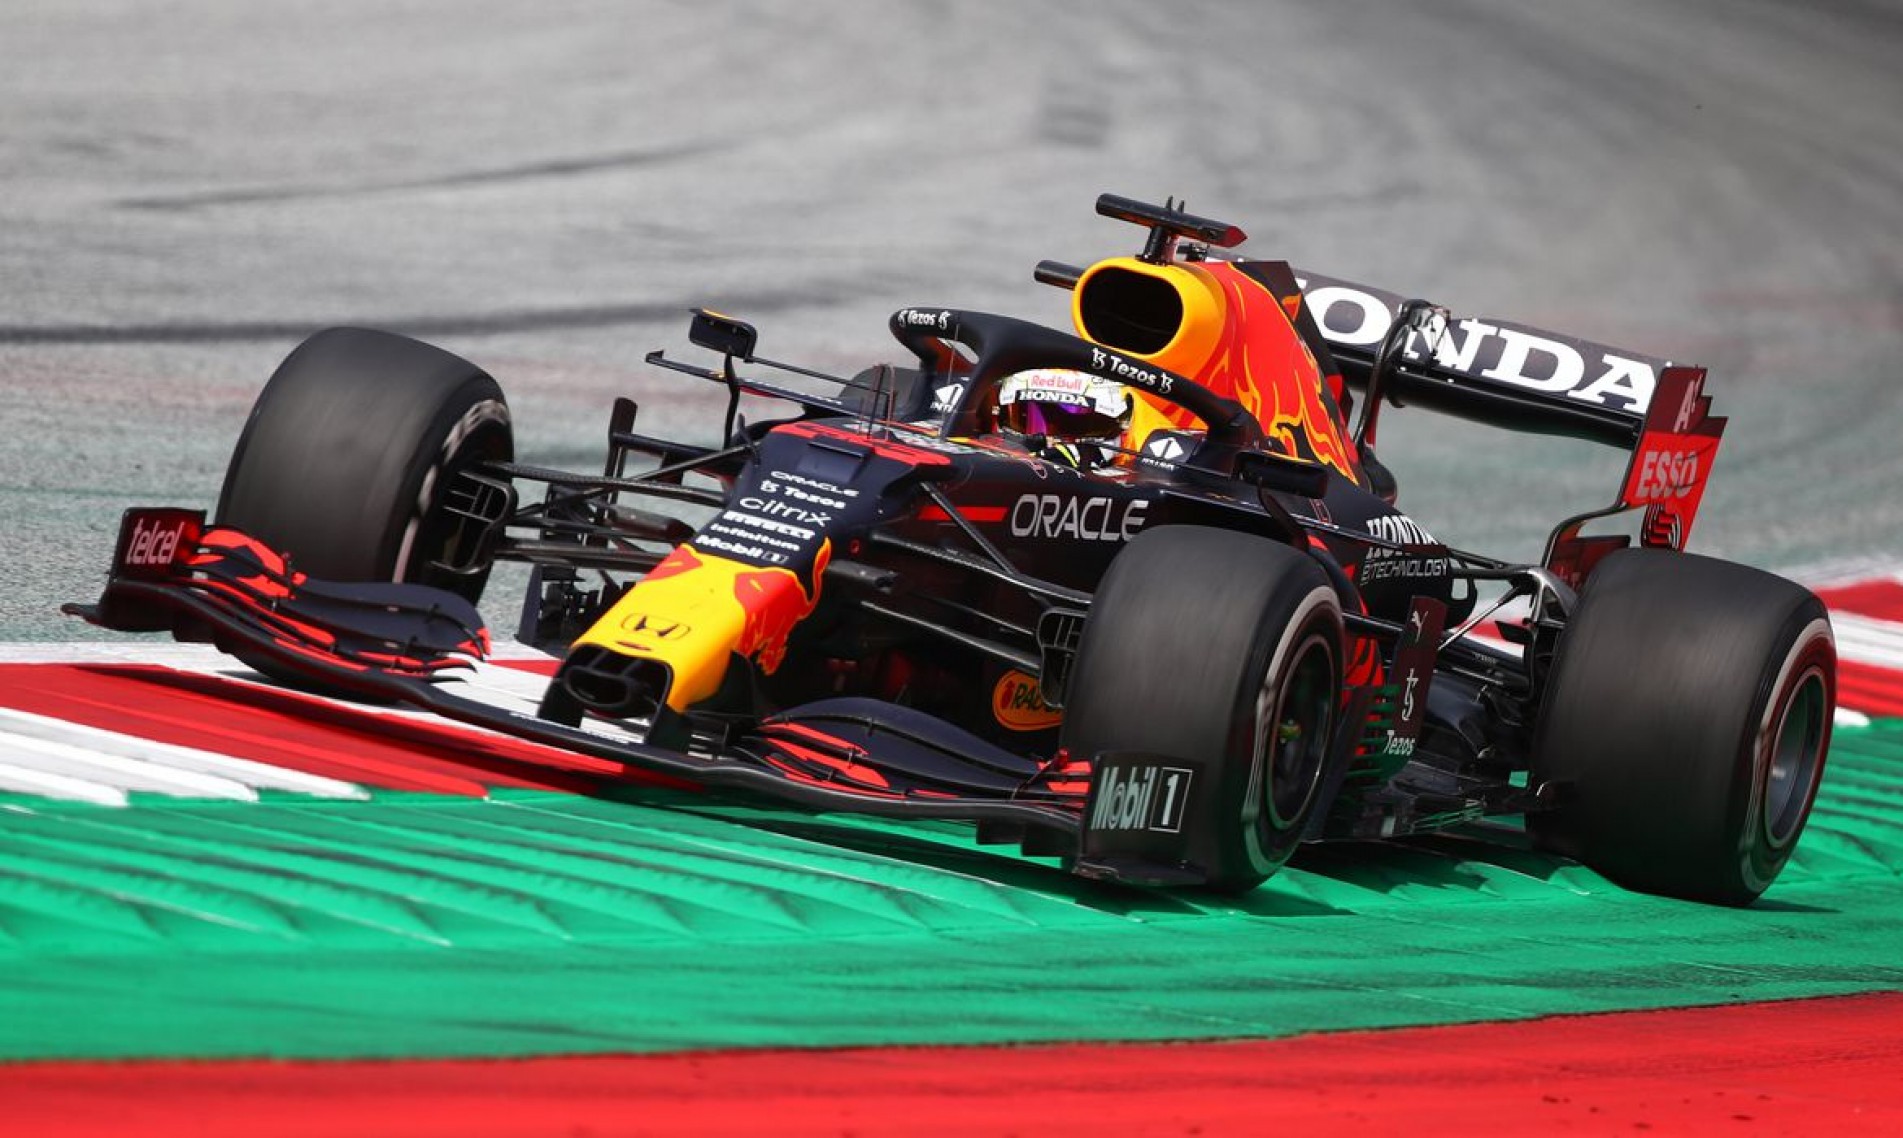 Red Bull homenageará Honda no GP da Turquia, último da fabricante